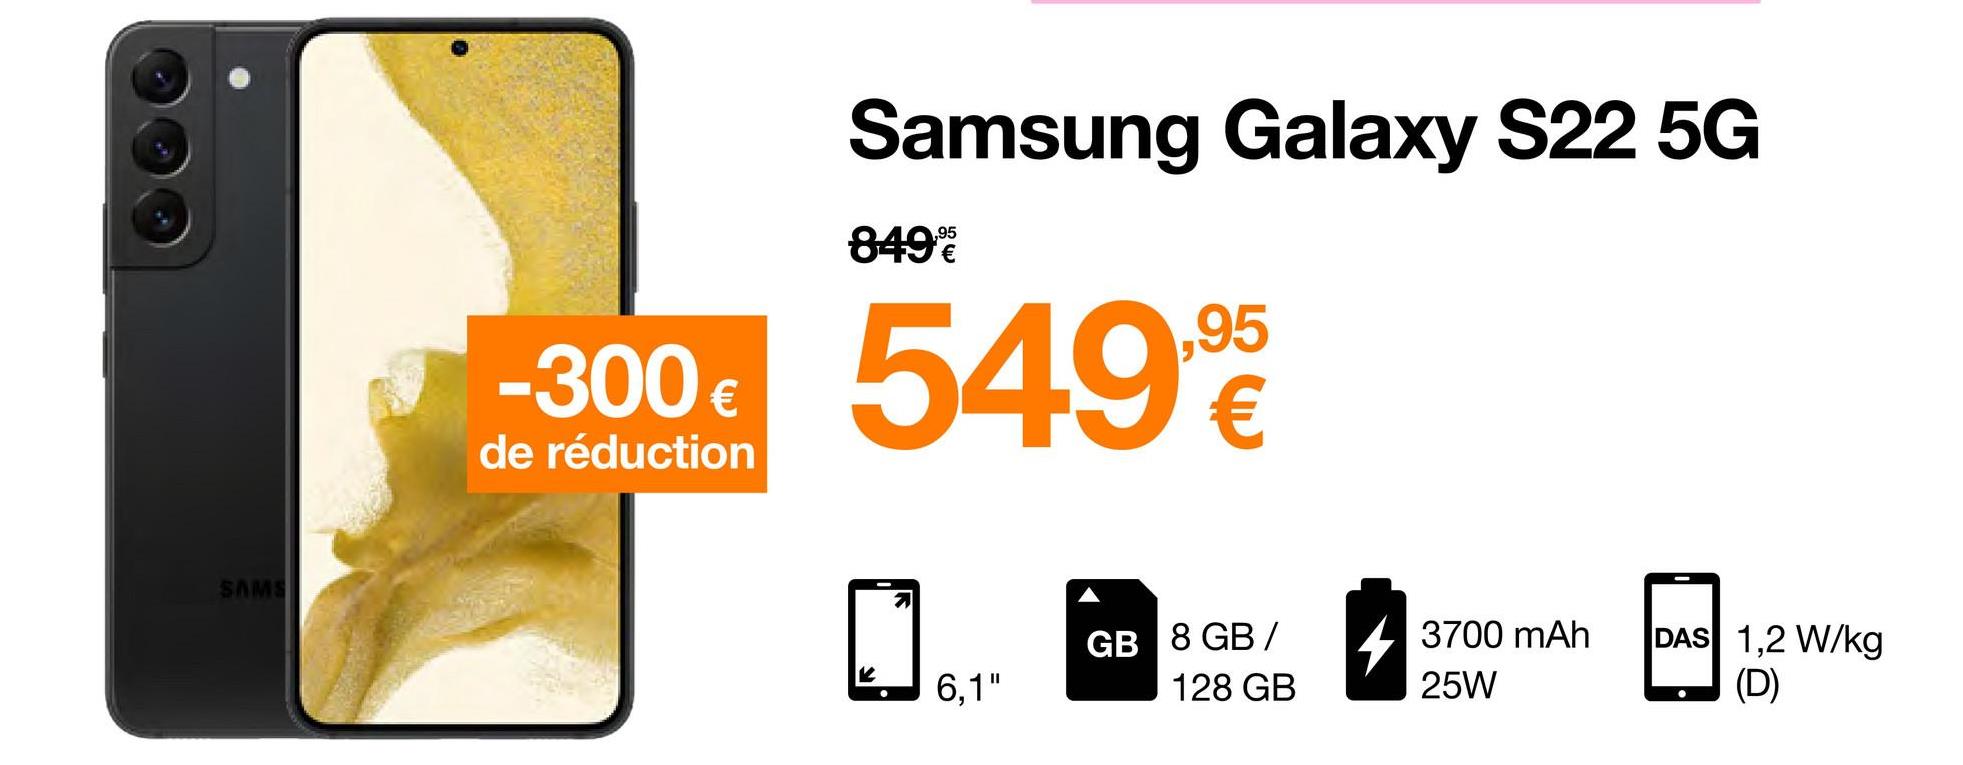 SAMS
-300 €
de réduction
Samsung Galaxy S22 5G
849%
549,9
6,1"
GB 8 GB /
128 GB
3700 mAh
25W
DAS 1,2 W/kg
(D)